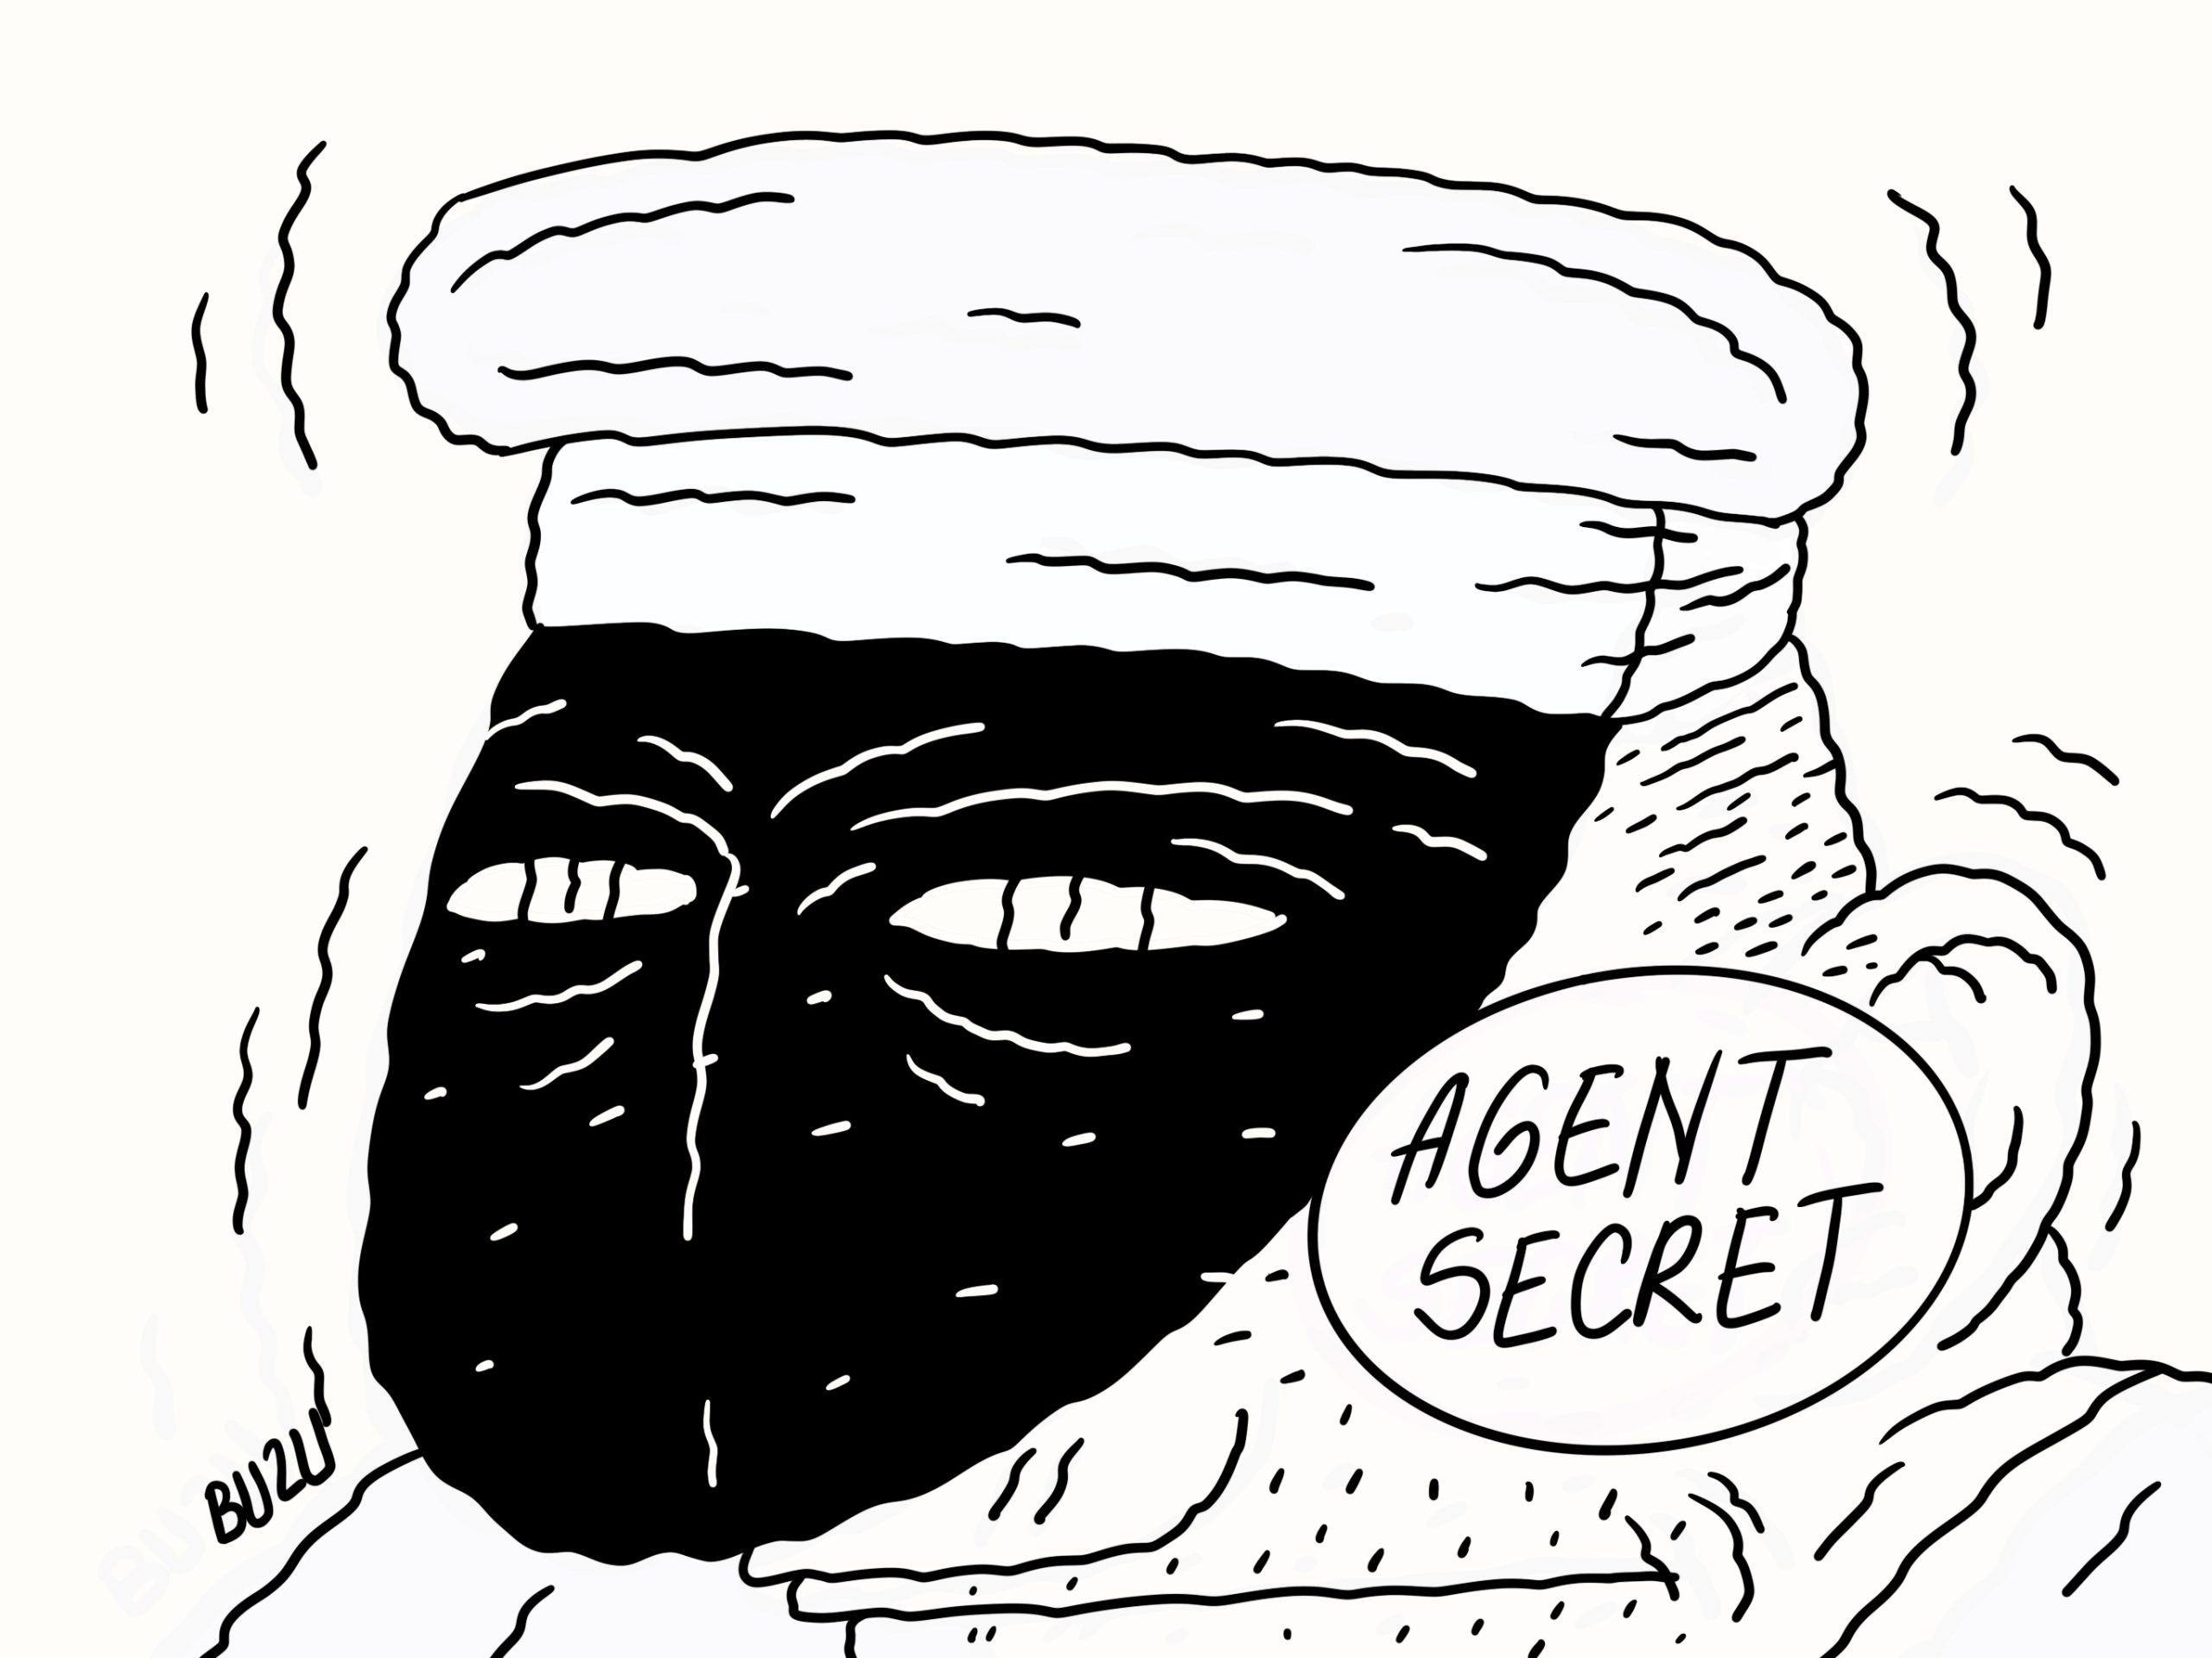 Agent secret Ep. 10